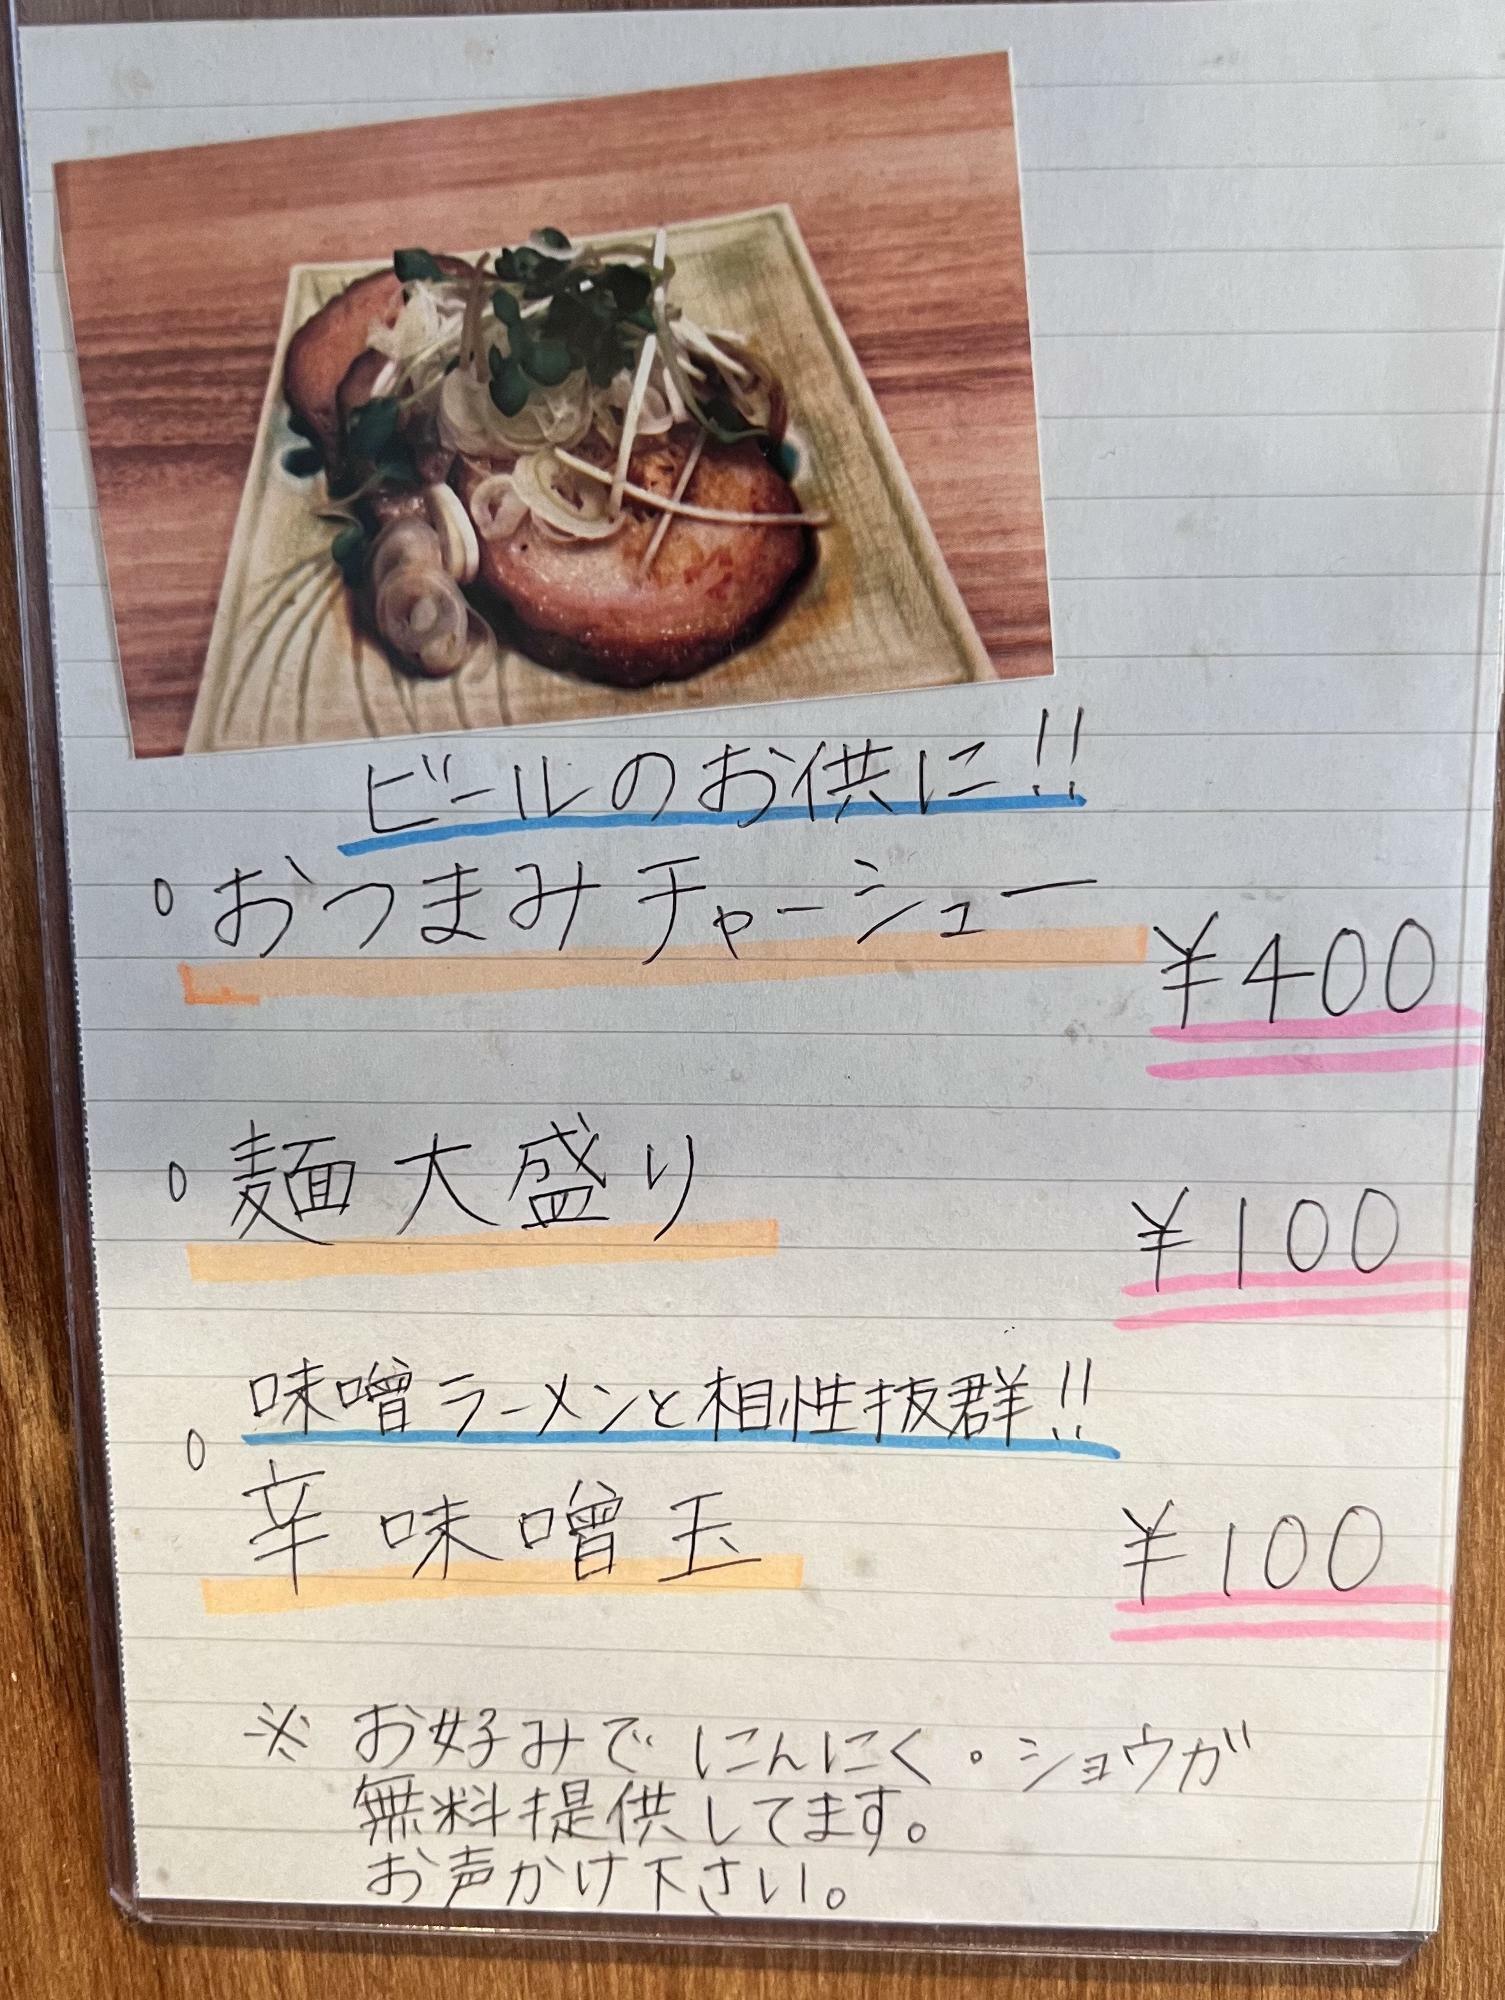 麺大盛りも100円で対応してくれるのようです。